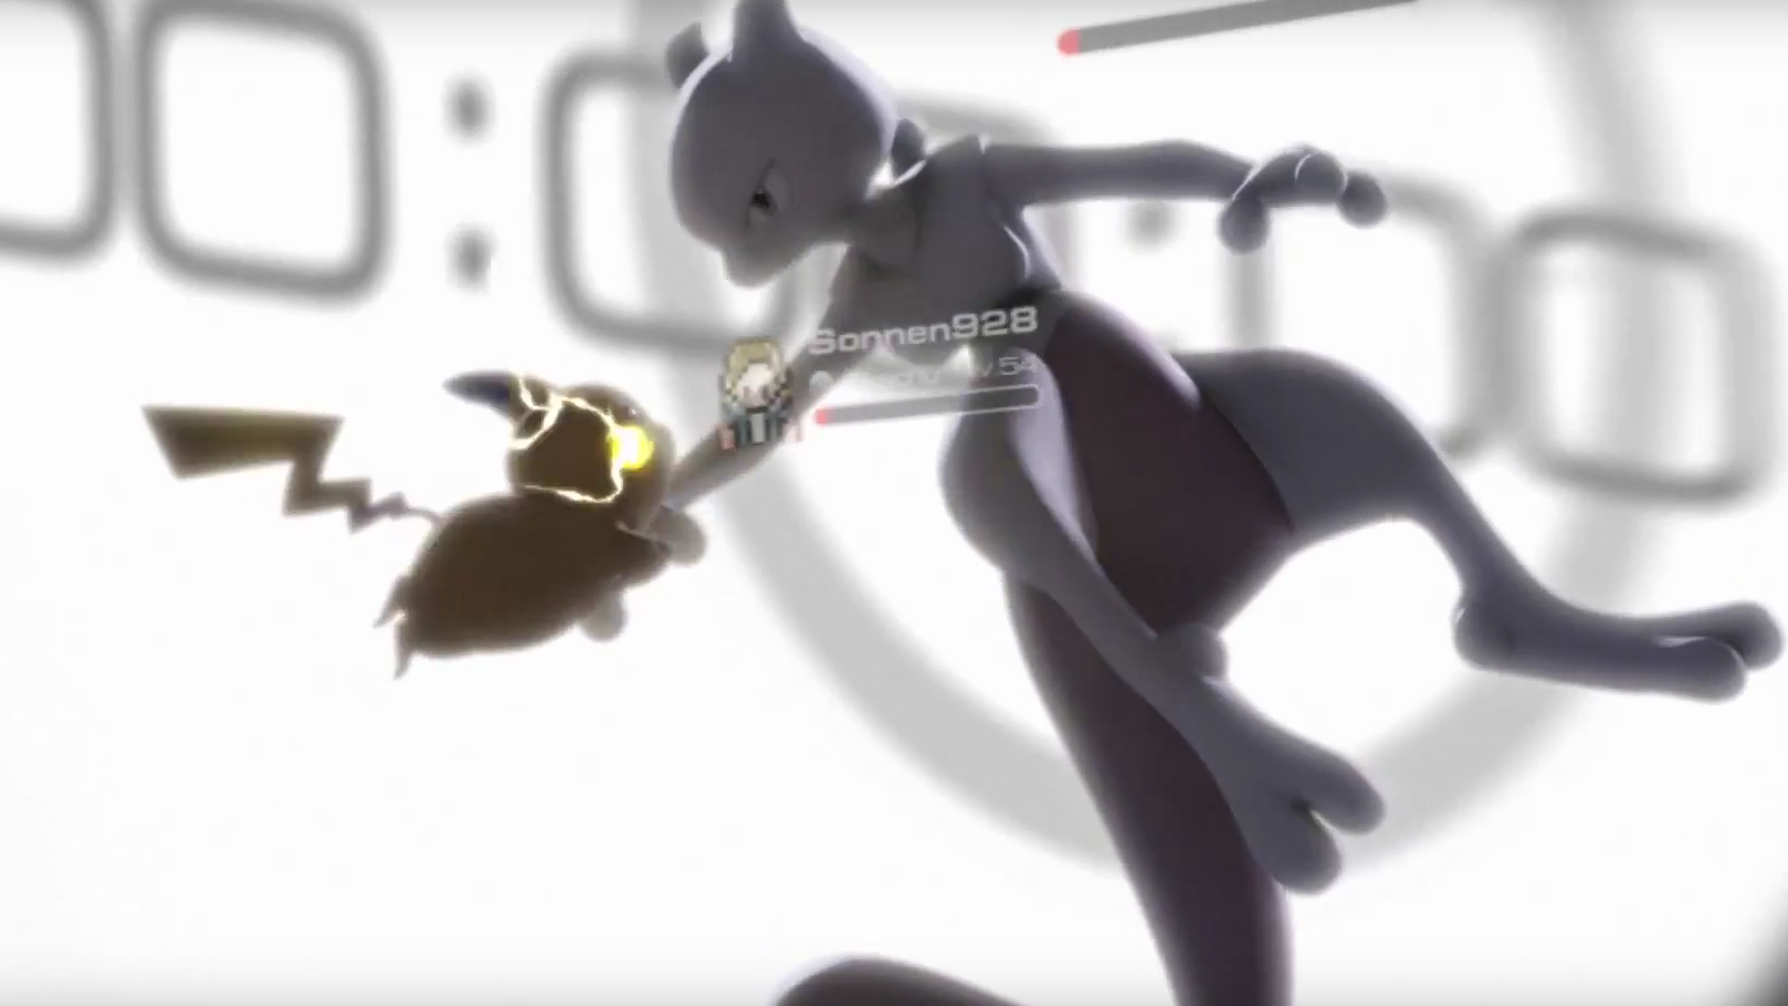 Pokémon GO: Jogador consegue capturar dois lendários ultra raros